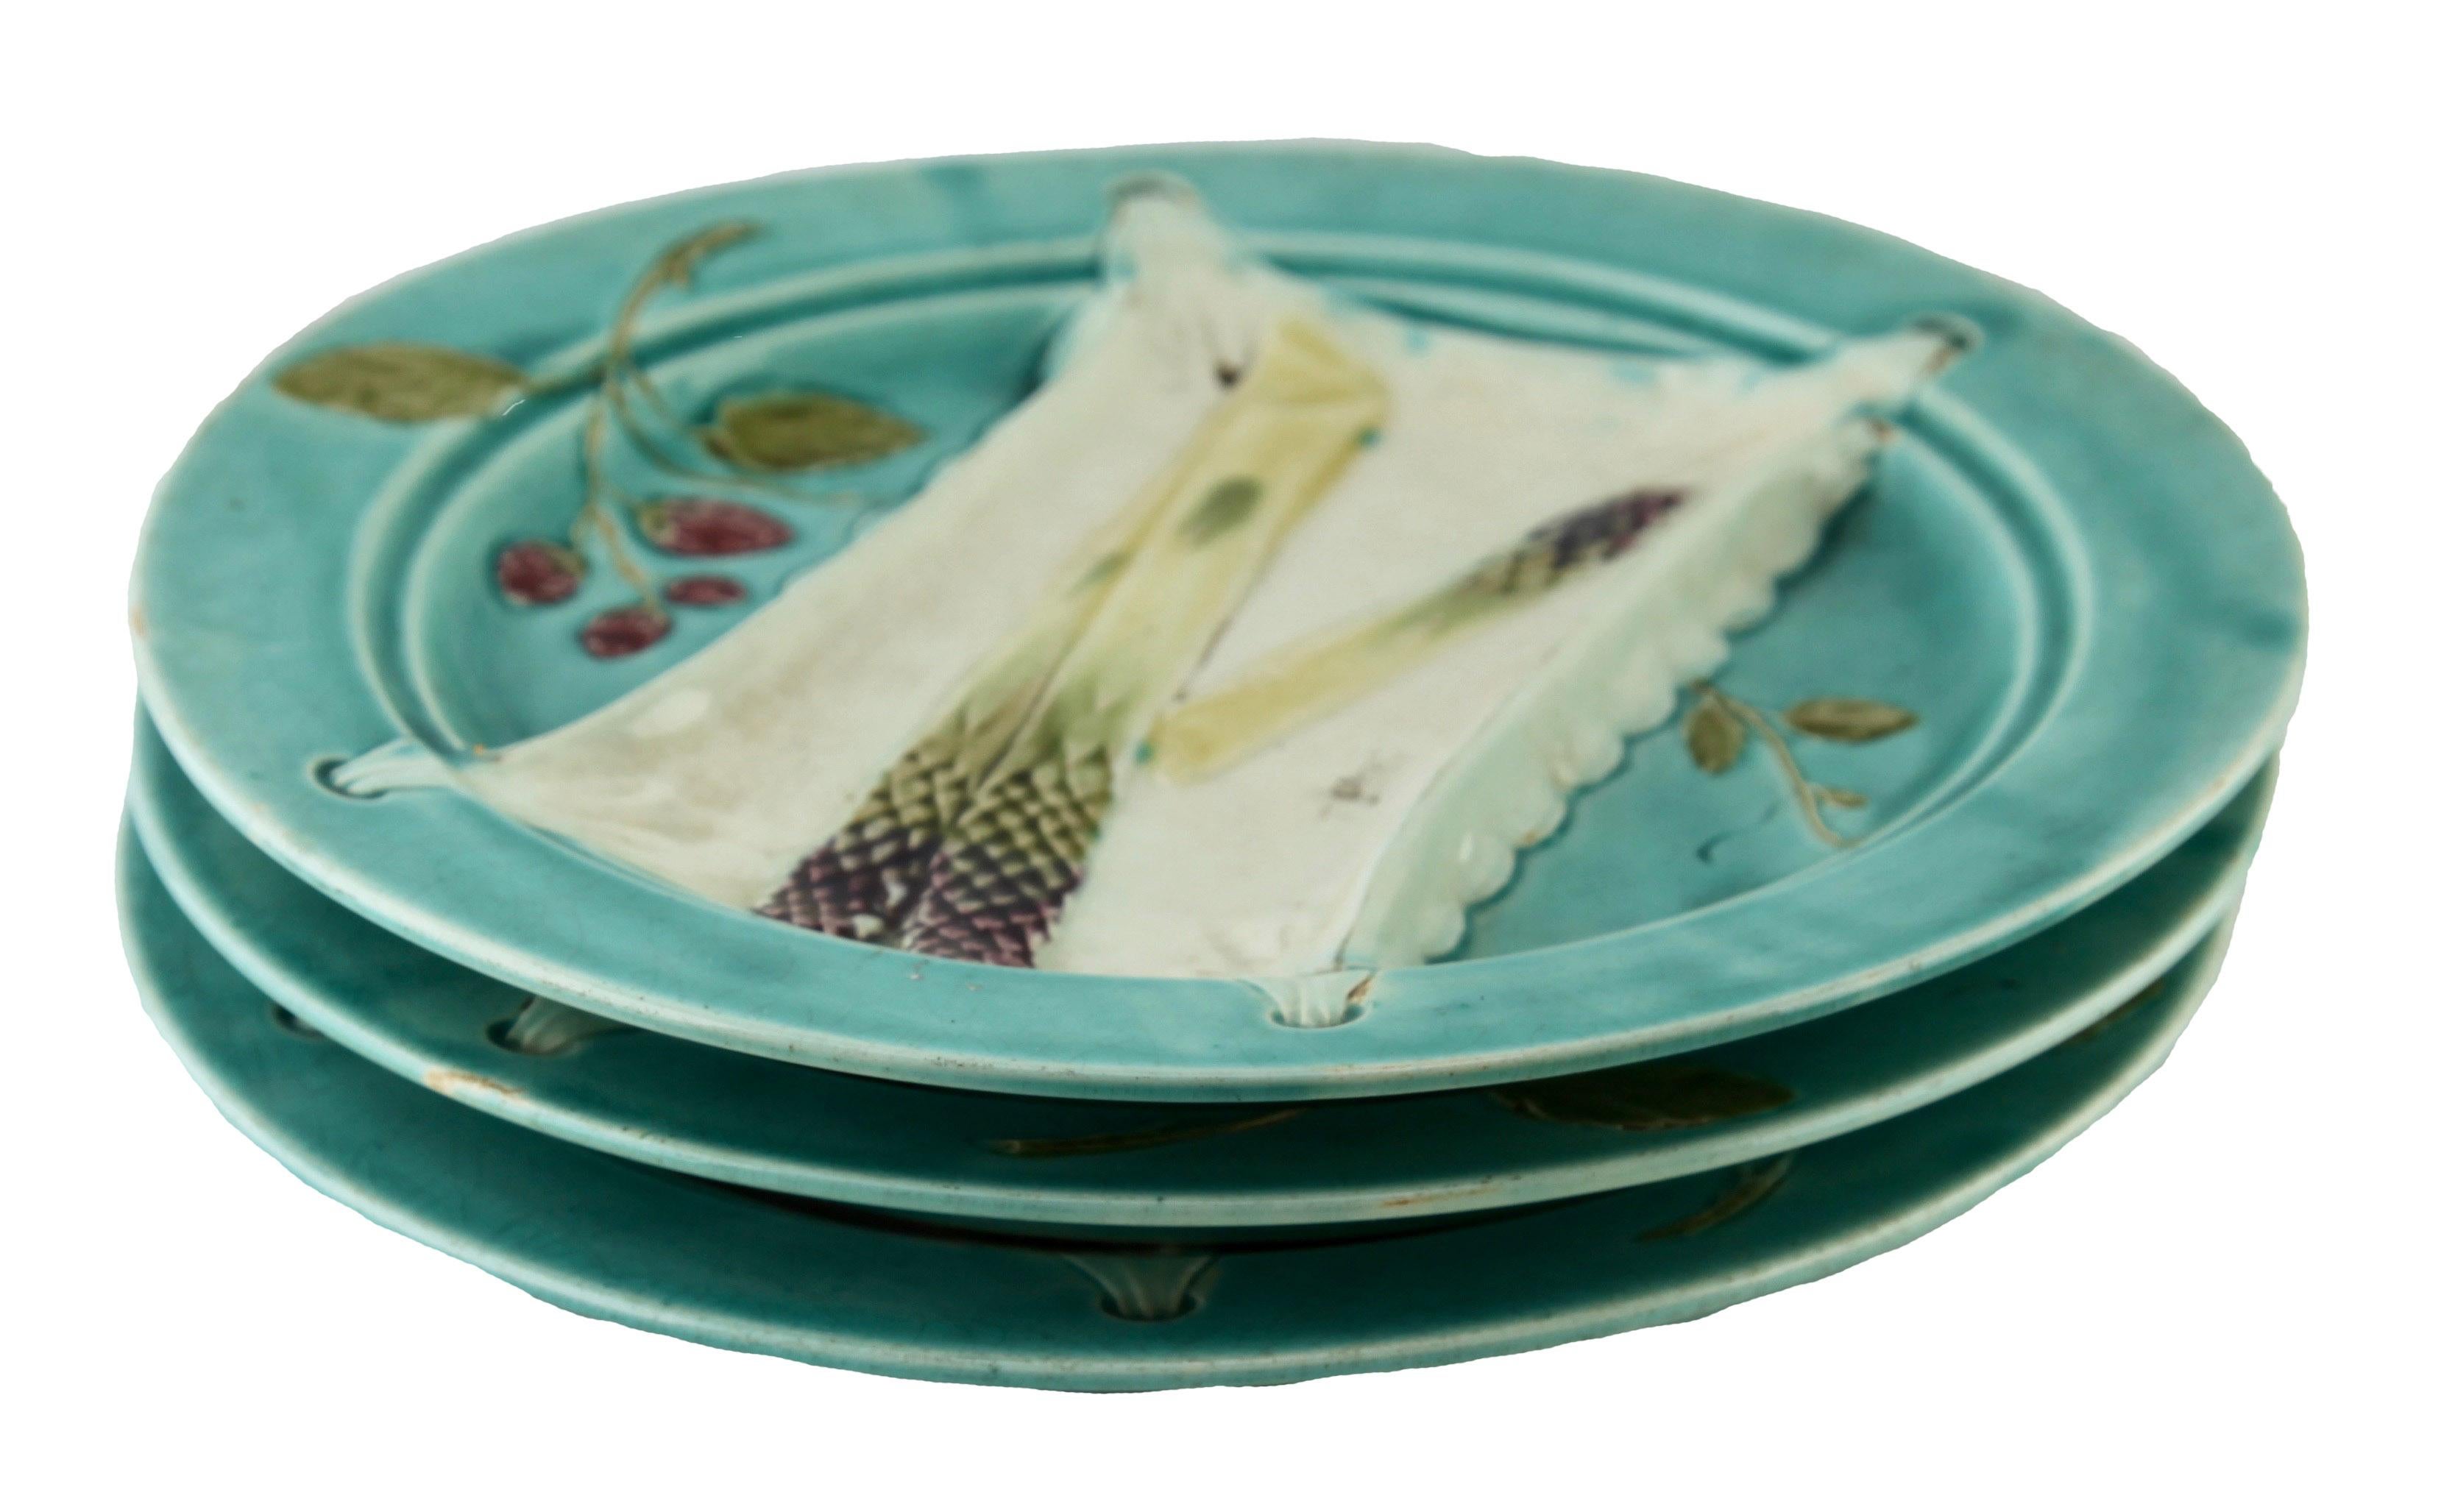 Service de vaisselle émaillée Art Nouveau Majolica de 3 pièces Motif d'asperges en relief.

La majolique est un type de faïence, Asparagus décorée avec des glaçures au plomb colorées. 
La majolique victorienne a été fabriquée entre 1849 et